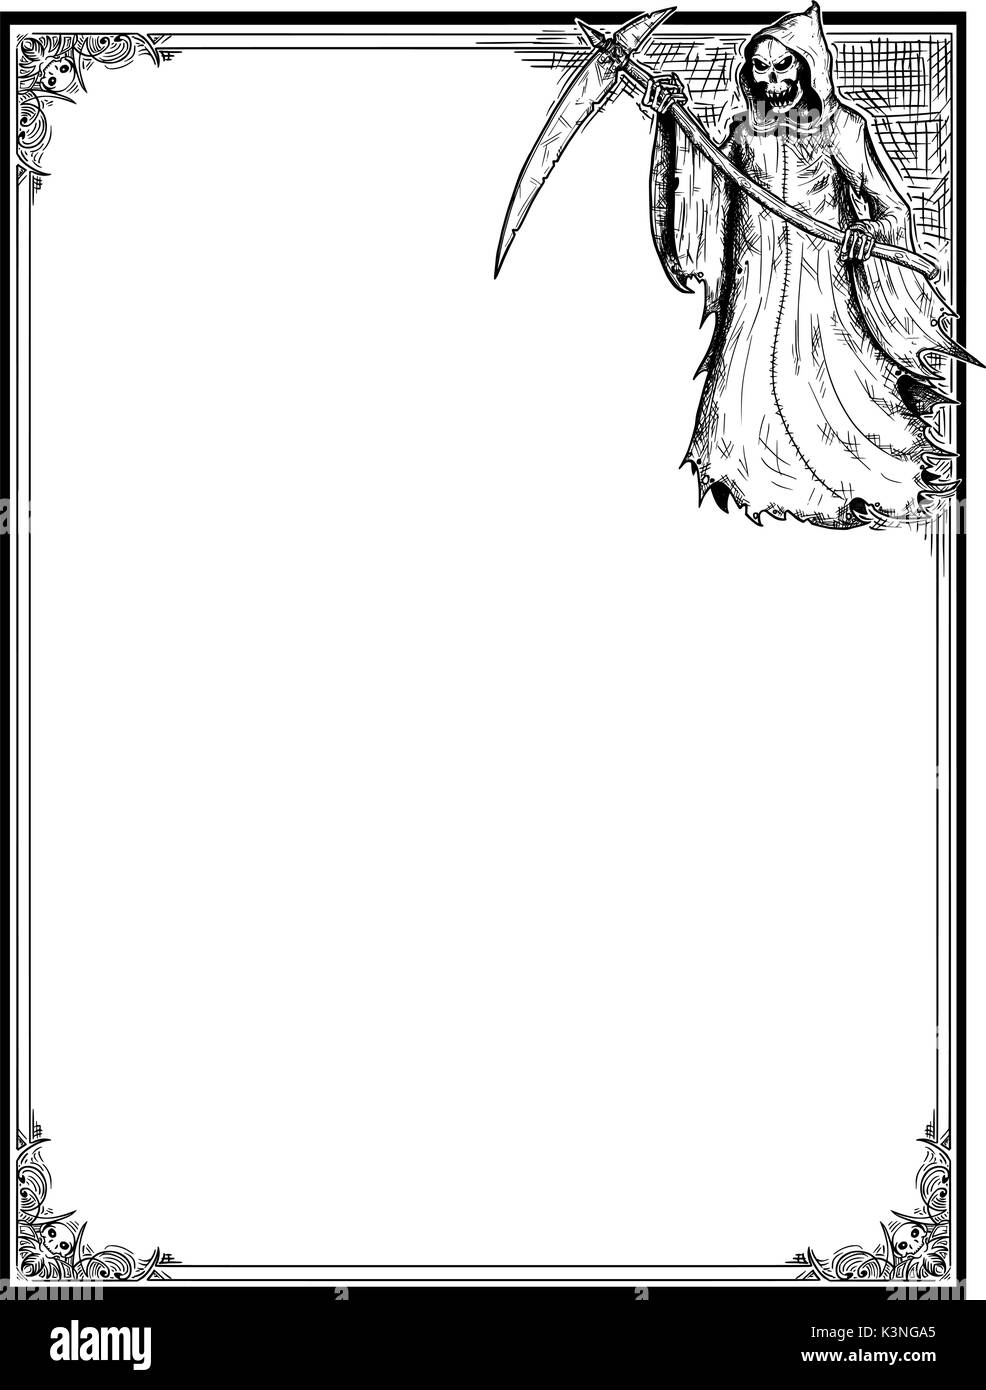 Disegno a mano cartoon Halloween frame con Grim Reaper nel cofano con la falce. Illustrazione Vettoriale